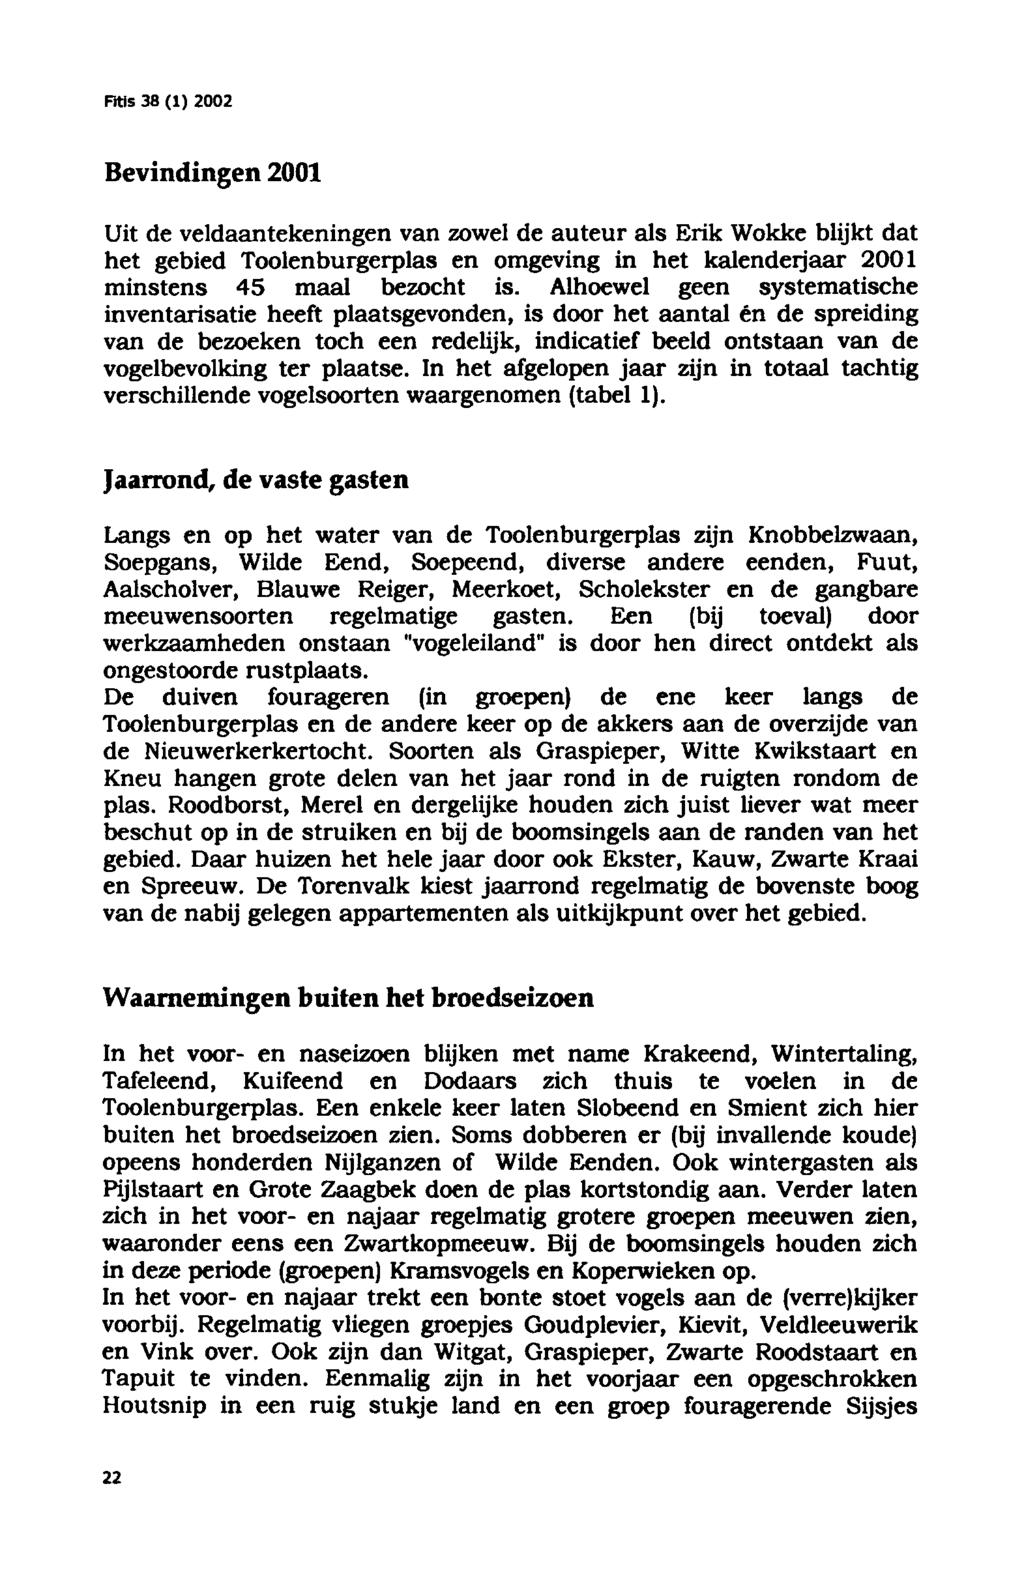 Bevindingen 2001 Uit de veldaantekeningenvan zowel de auteur als Erik Wokke blijkt dat het gebied Toolenburgerplas en omgeving in het kalenderjaar 2001 minstens 45 maal bezocht is.